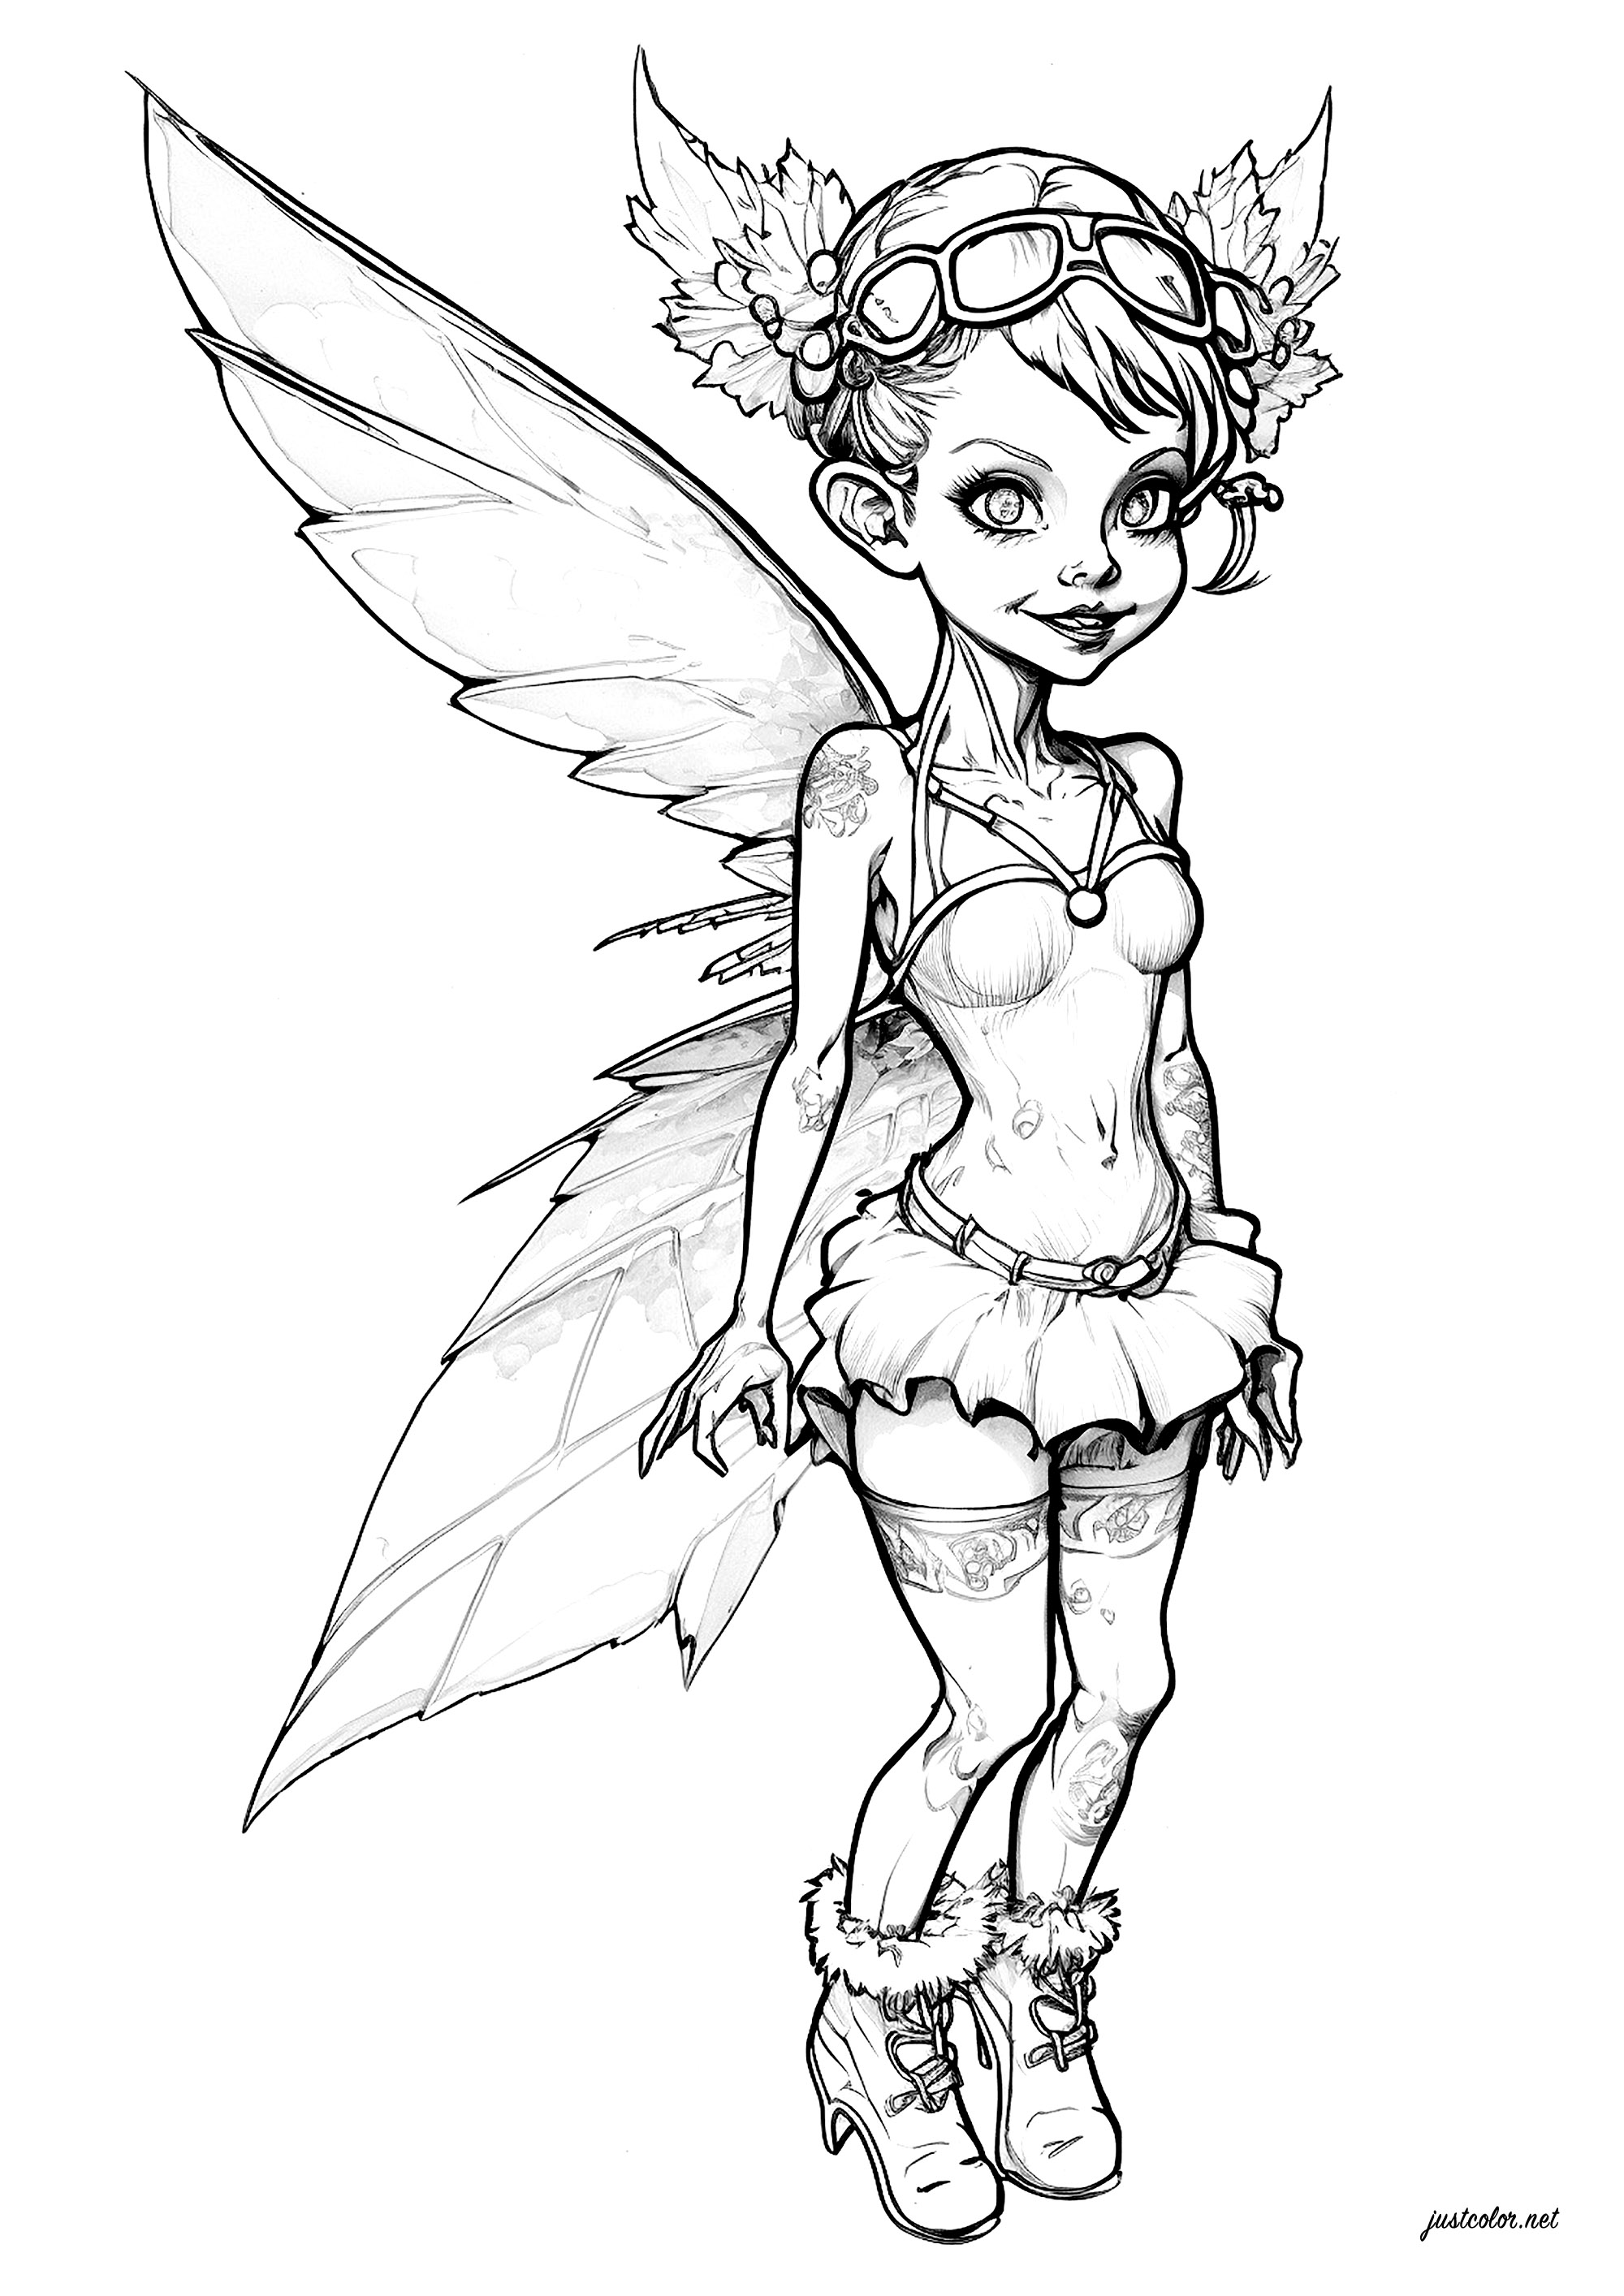 Fée de la forêt. Une belle petite fée avec sa jolie tenue et ses belles ailes déployées.